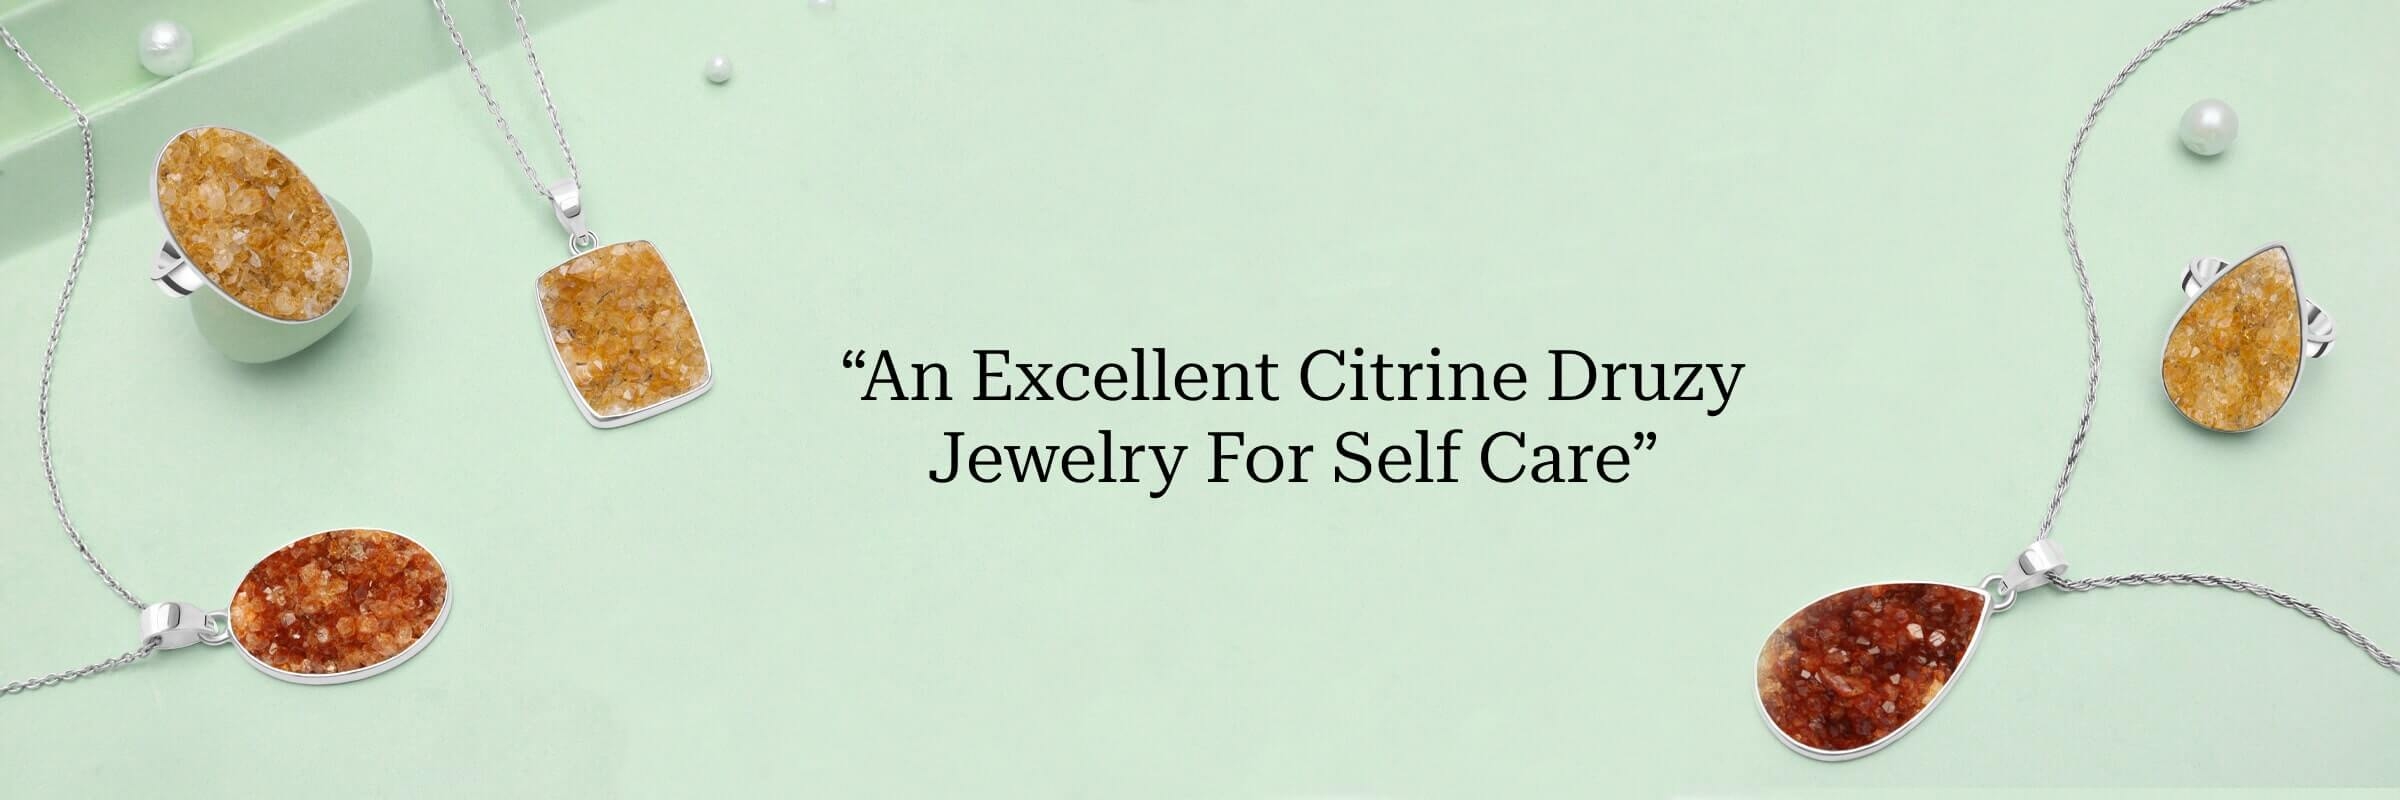 Citrine Druzy Jewelry